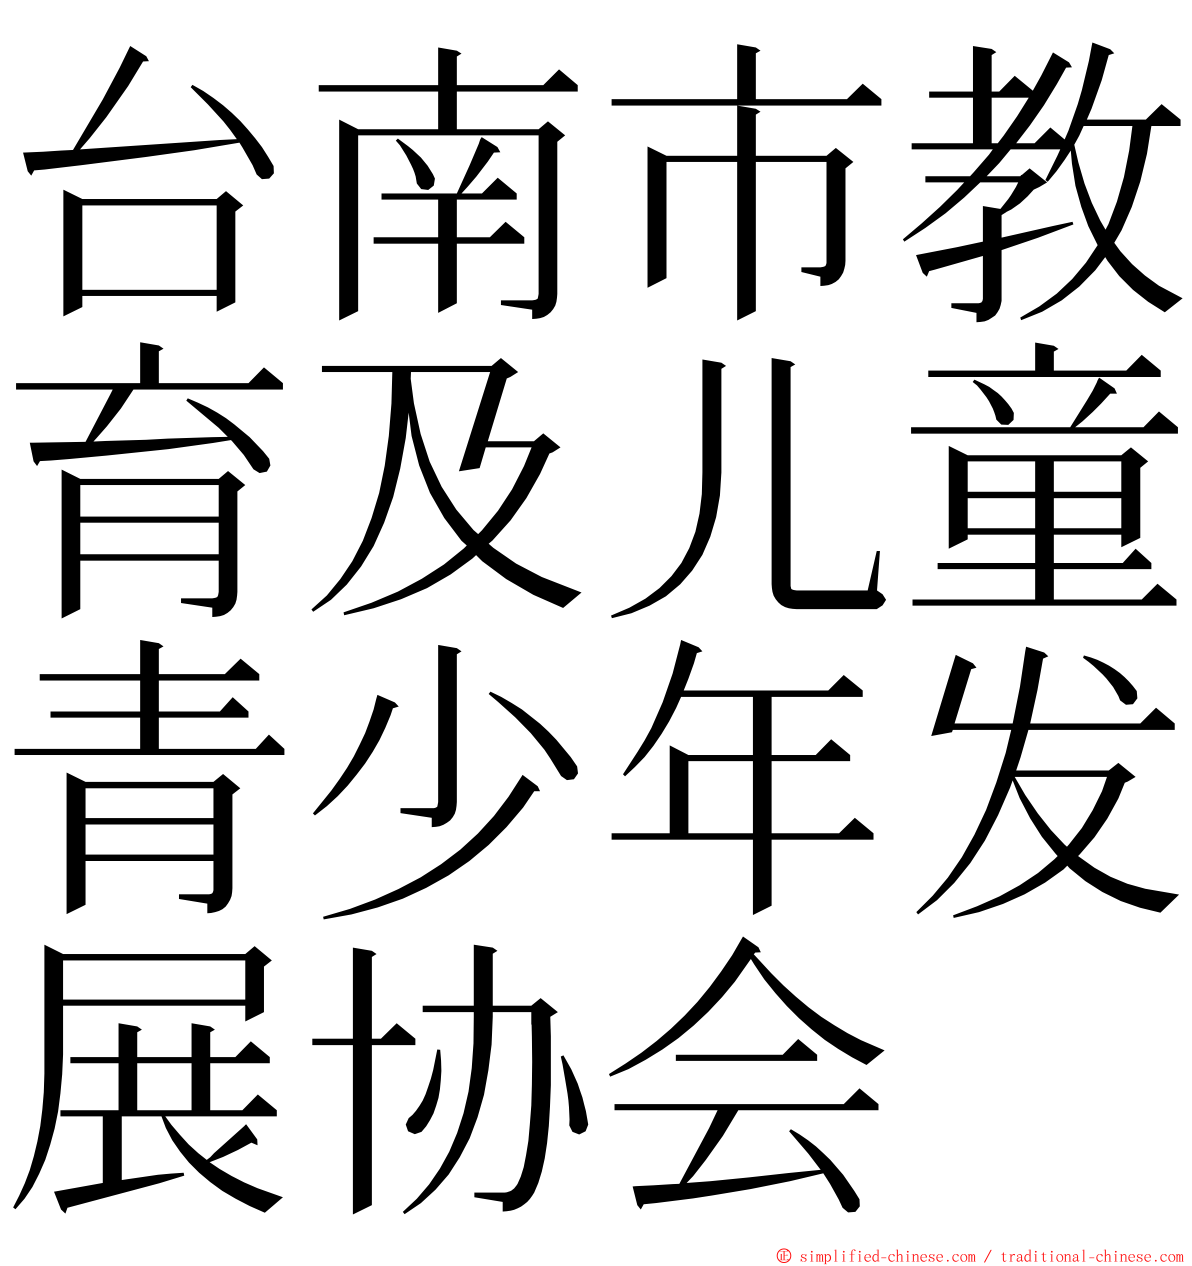 台南市教育及儿童青少年发展协会 ming font